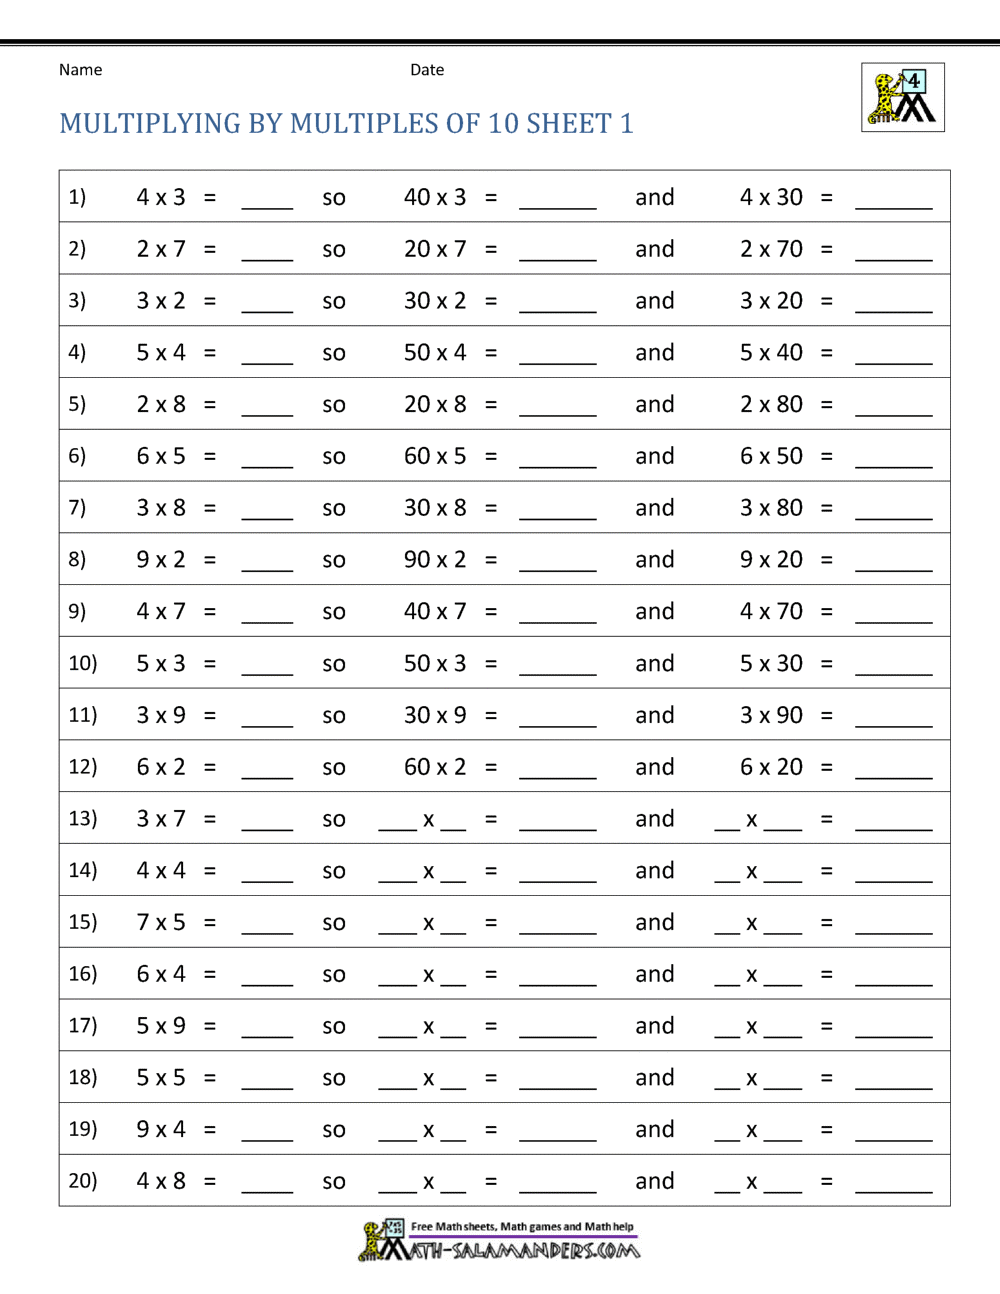 Multiplying By Powers Of 10 Worksheet